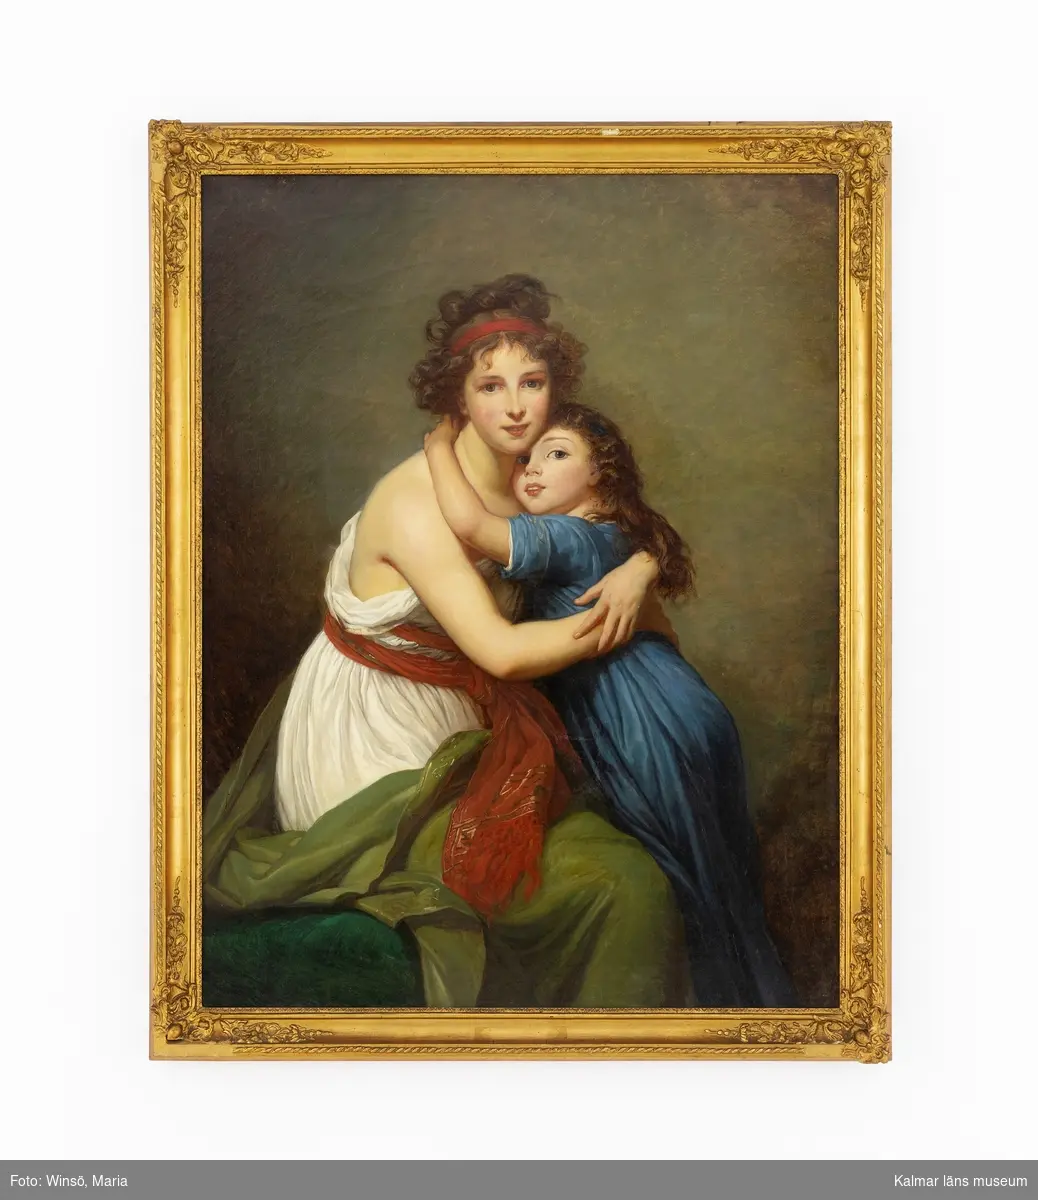 Kopia efter Marie Elisabeth Louise Vigée-Lebruns Självporträtt med dotter. Motivet föreställer en kvinna och en flicka som håller om varandra, mot en mörk bakgrund. Framträdande färger är blått, grönt, vitt och rött.